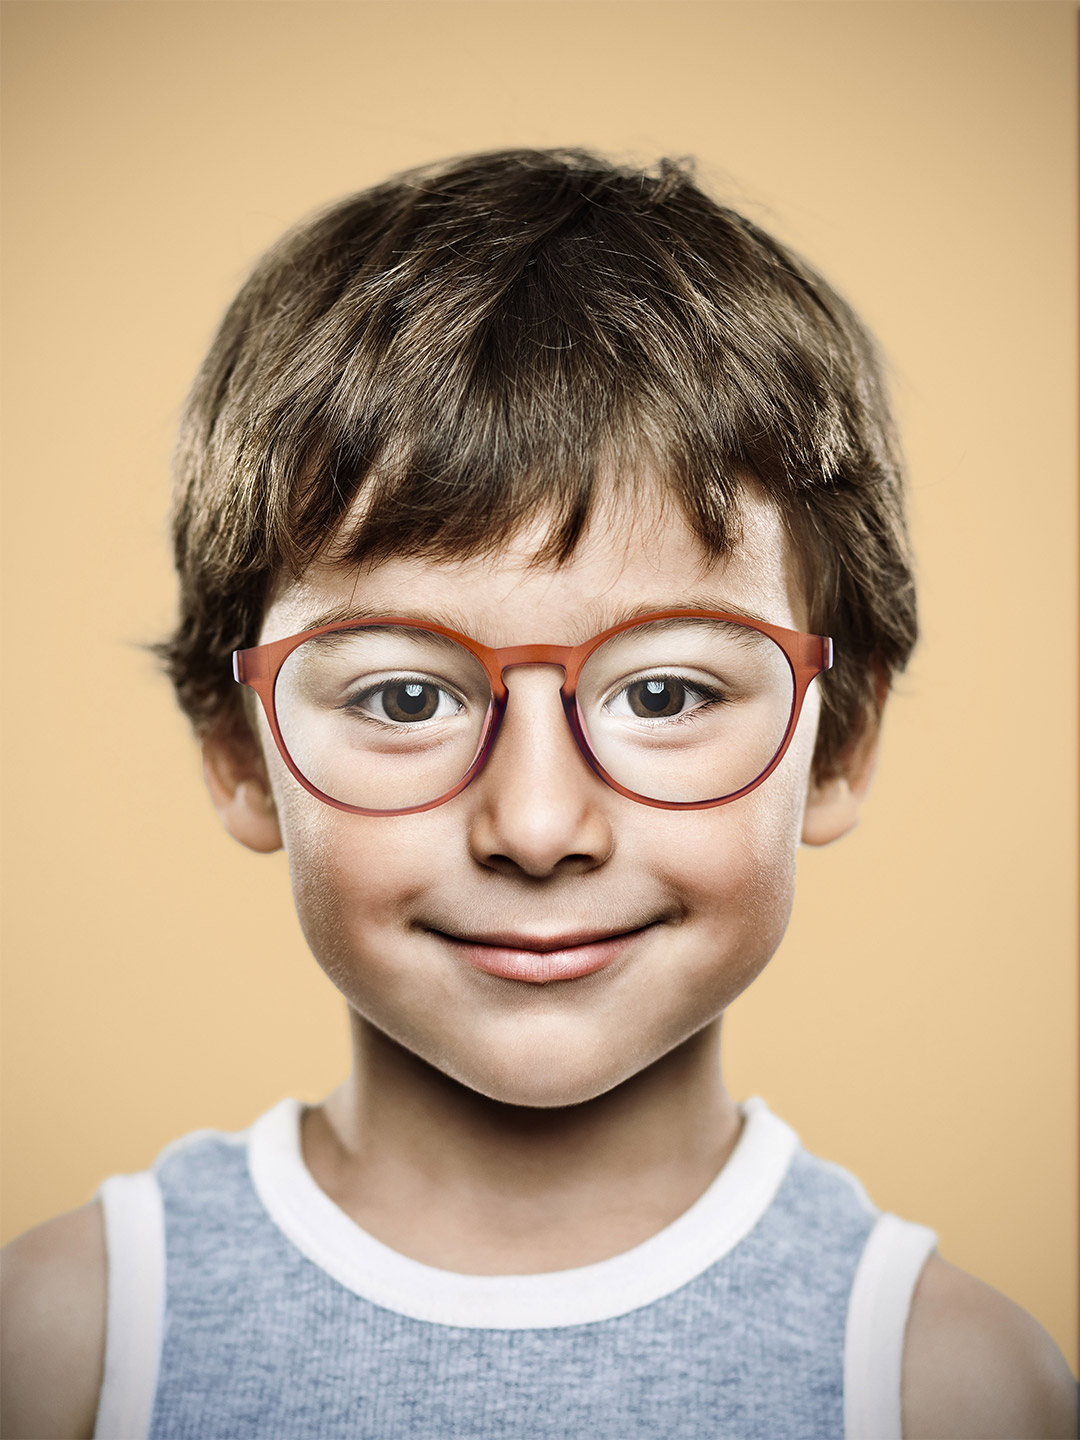 Kind met bril ter ondersteuning van tekst over bijziendheid bij kinderen